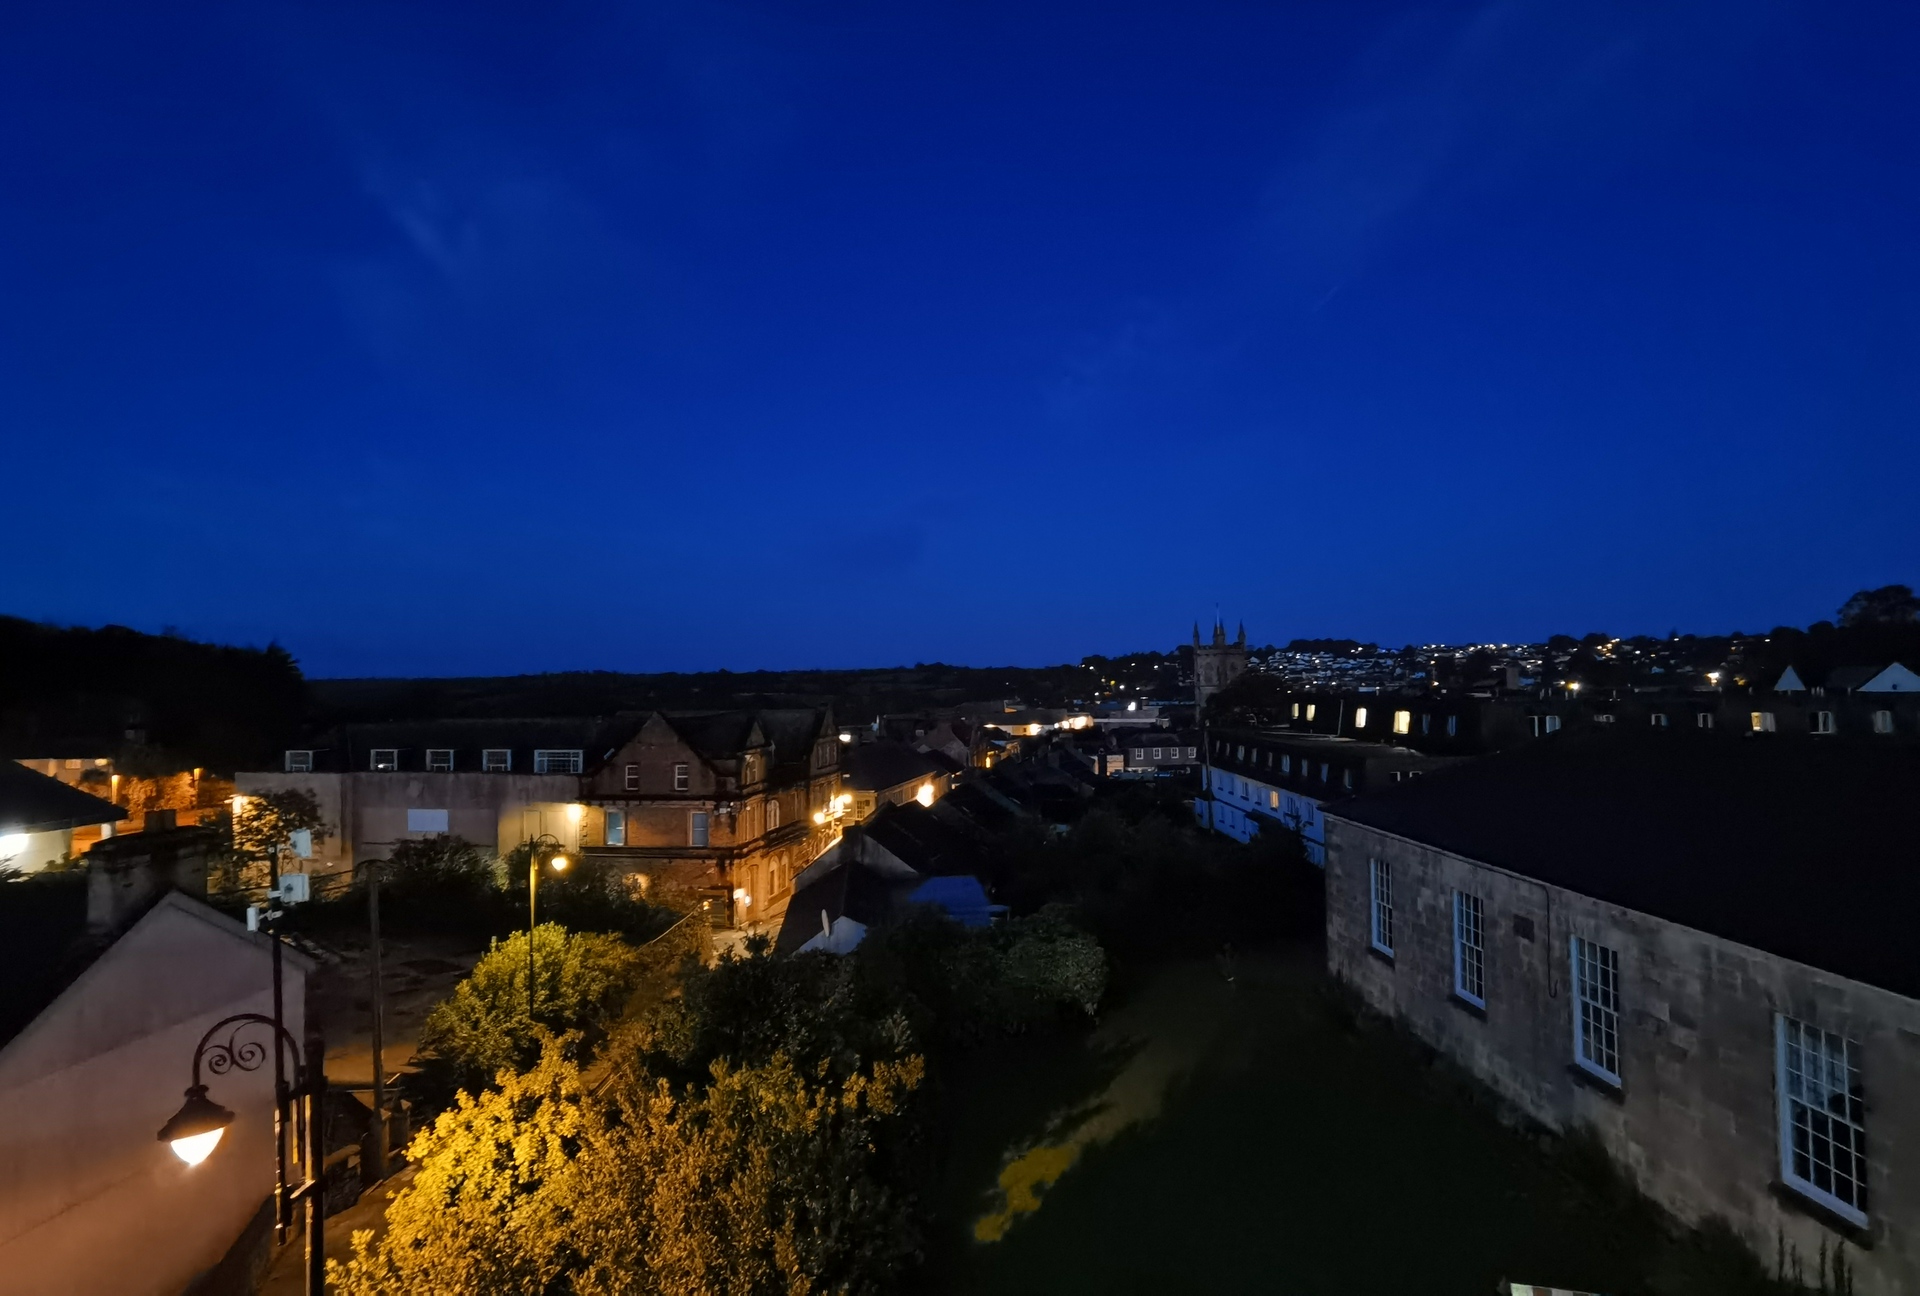 Huawei Mate 30 Pro Camera test night shot overlooking UK town